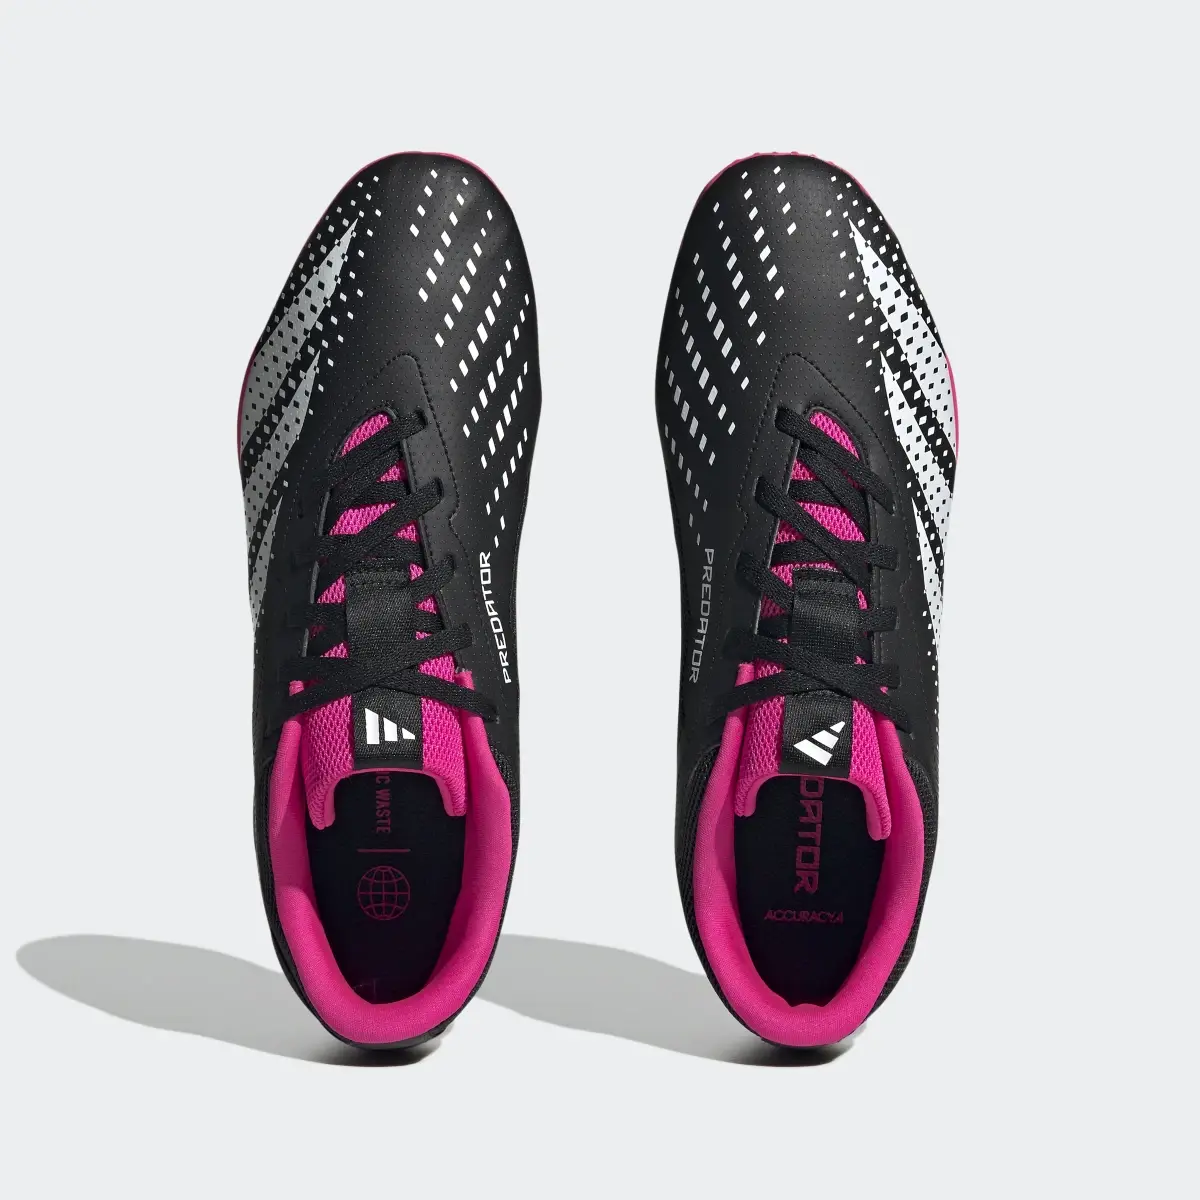 Adidas Predator Accuracy.4 Indoor Sala Boots. 3